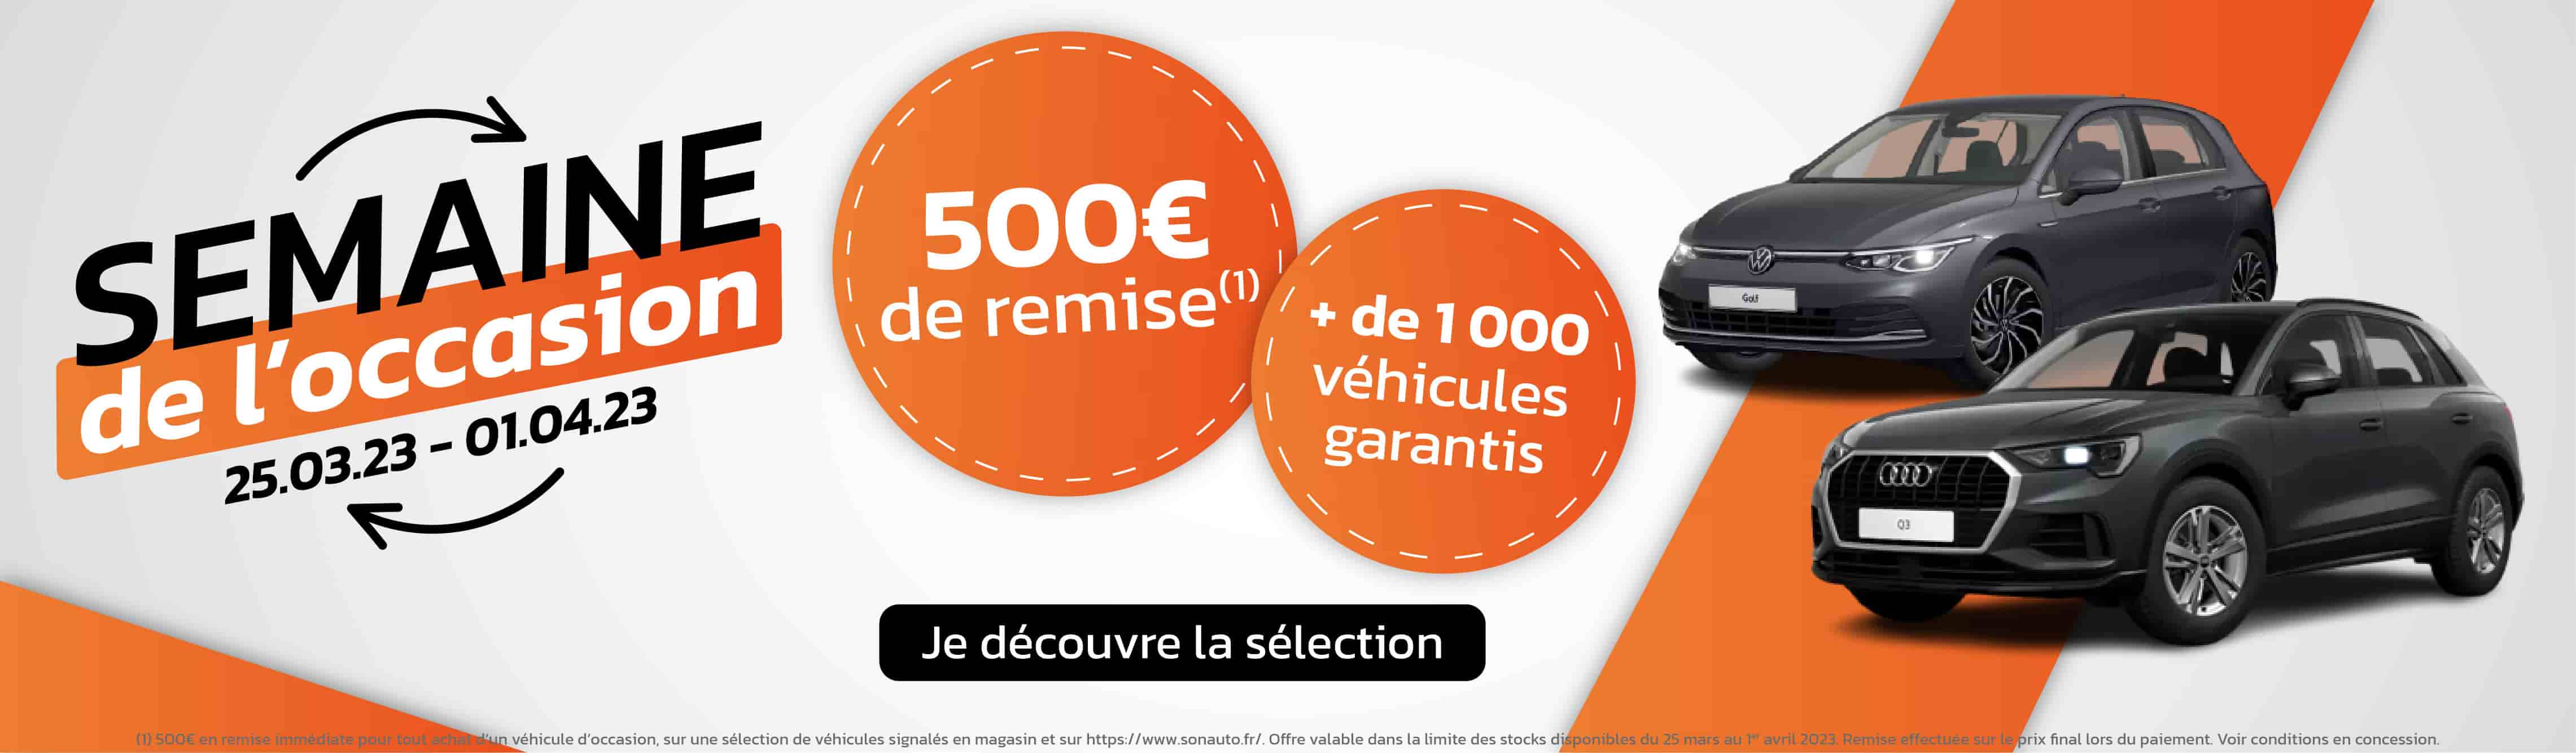 Volkswagen Villeneuve-d'Ascq AUTO-EXPO - Semaine de l'Occasion Juin 2023